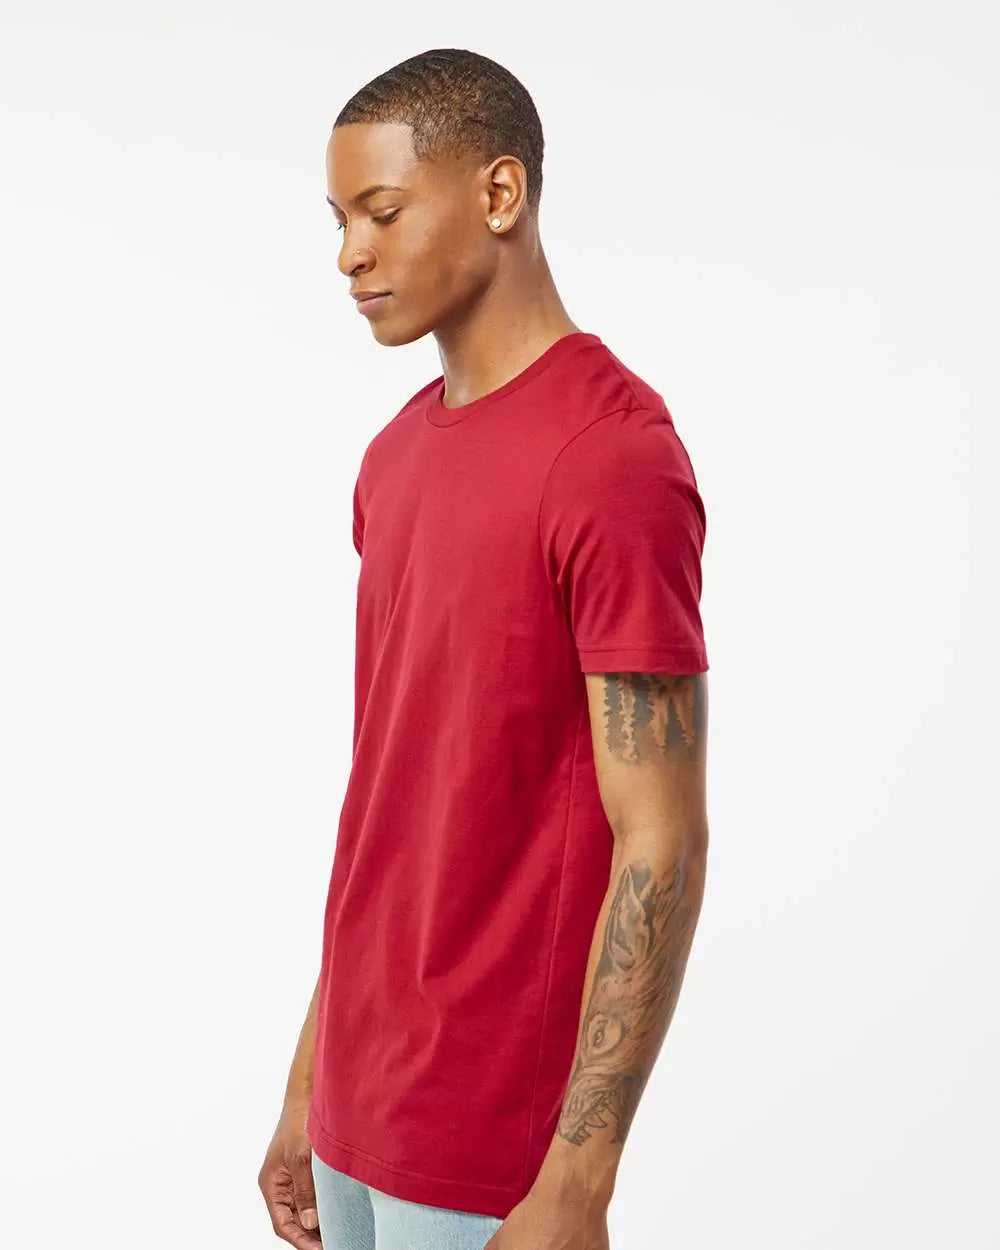 Tultex 502 Premium Cotton T-Shirt - Cardinal - HIT a Double - 1